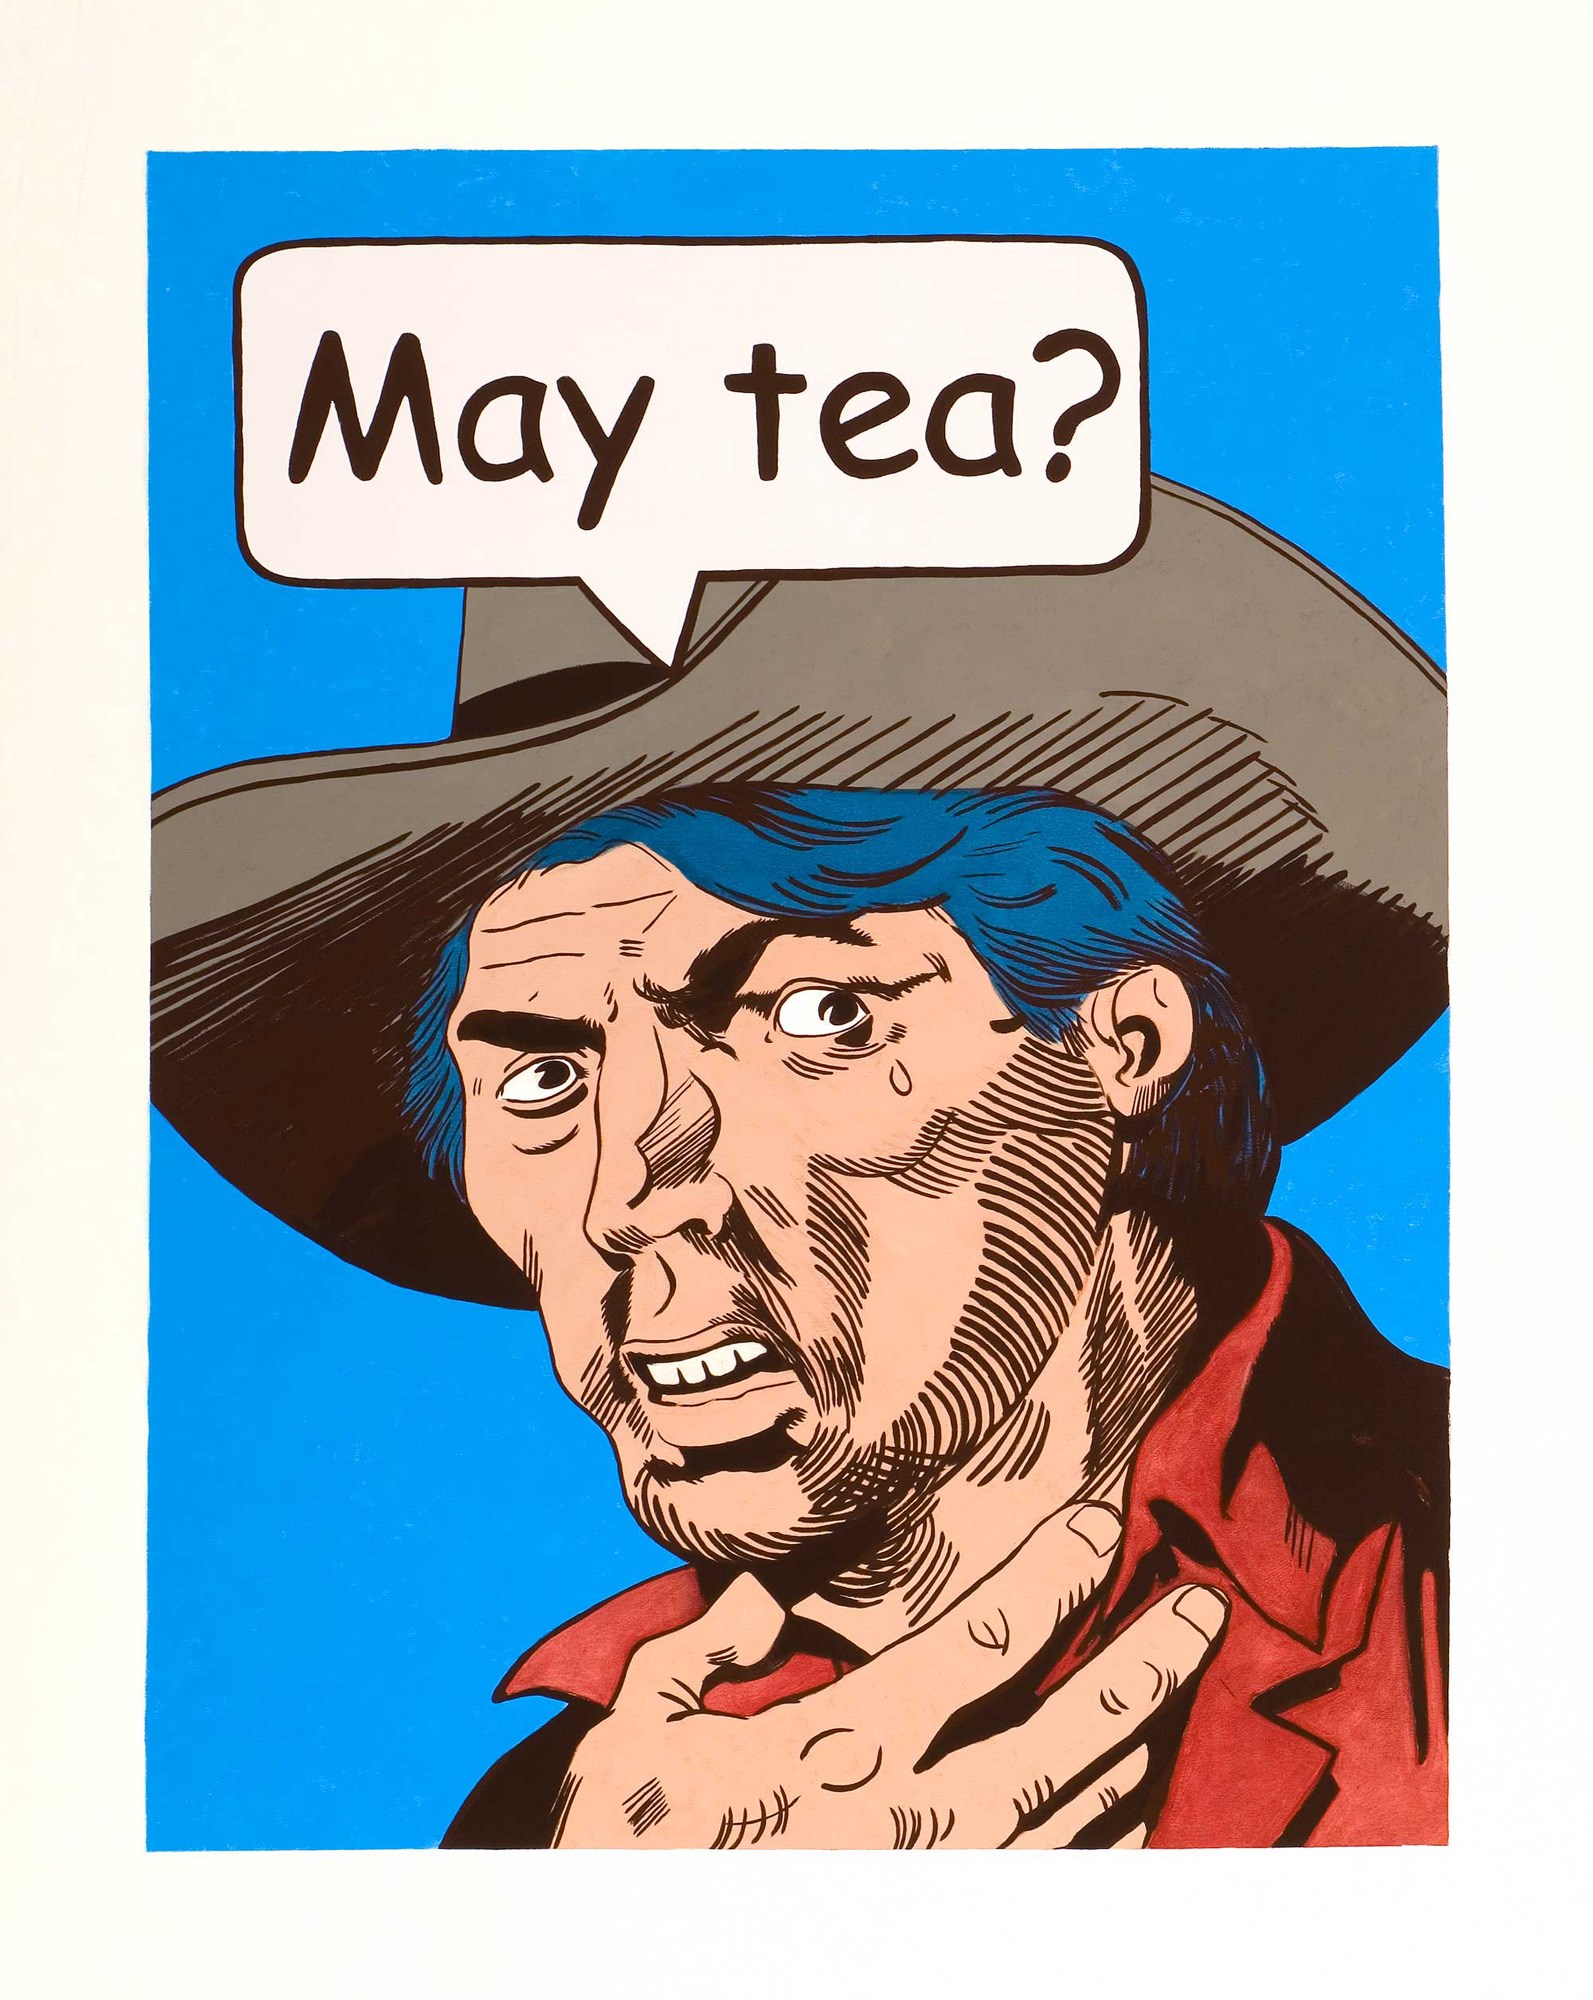 May tea?